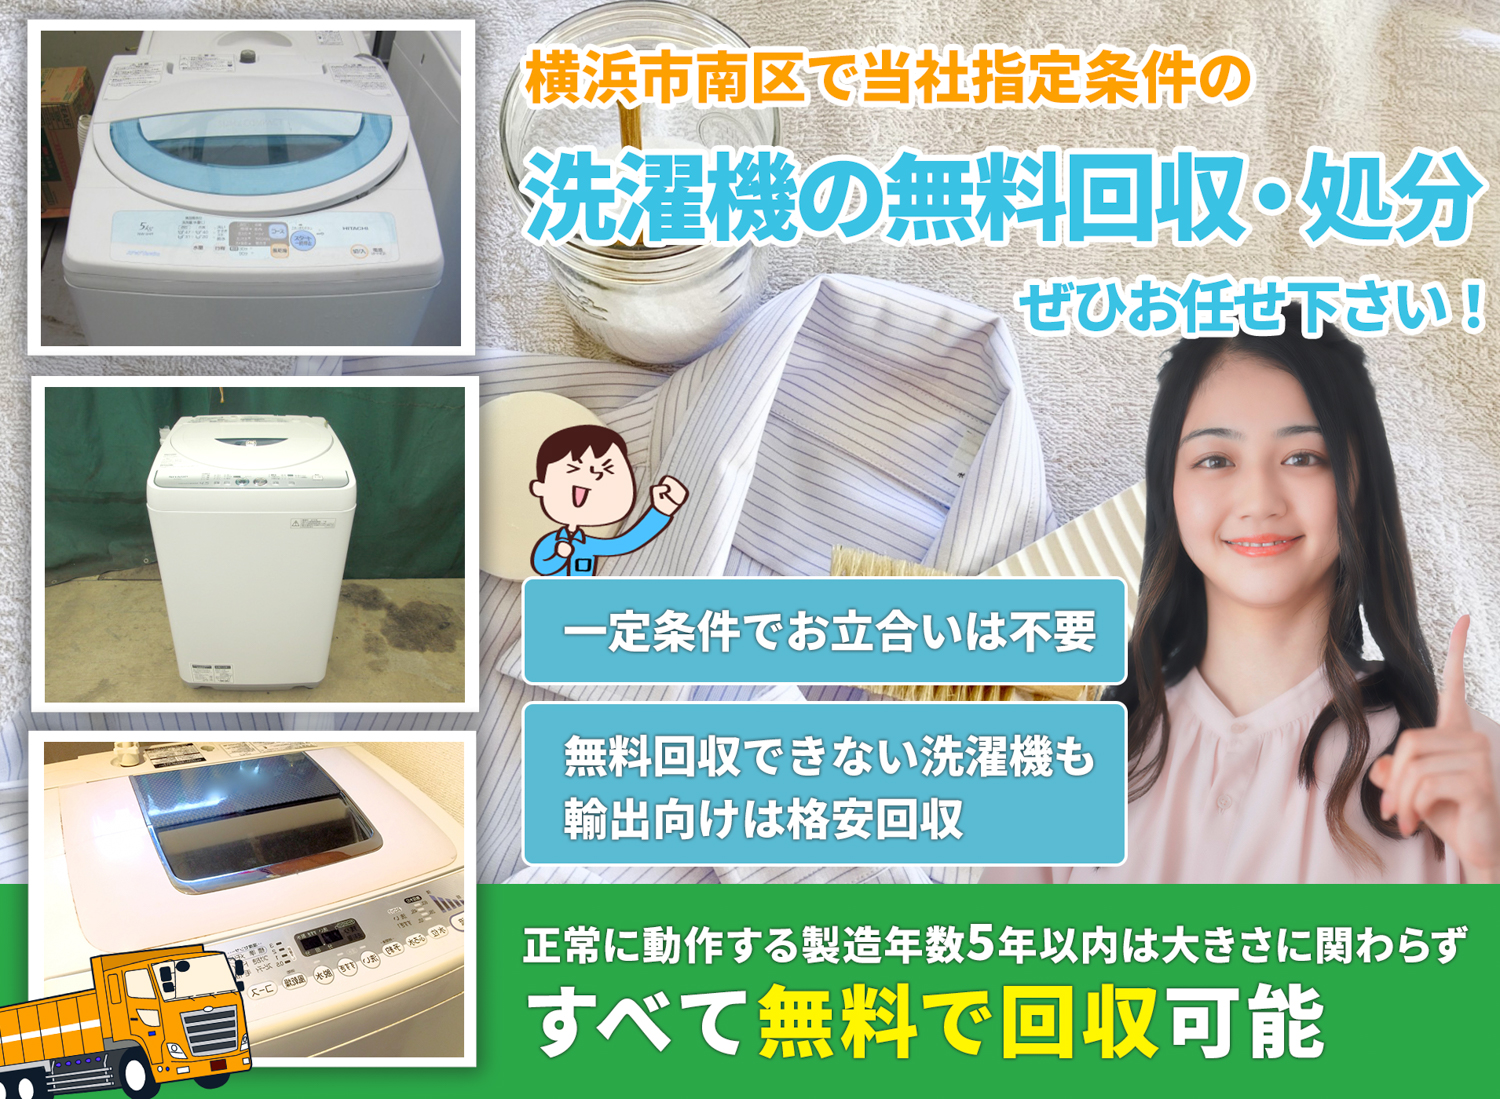 横浜市南区のサービスで地域一番を目指す洗濯機無料回収処分隊の洗濯機無料回収サービス